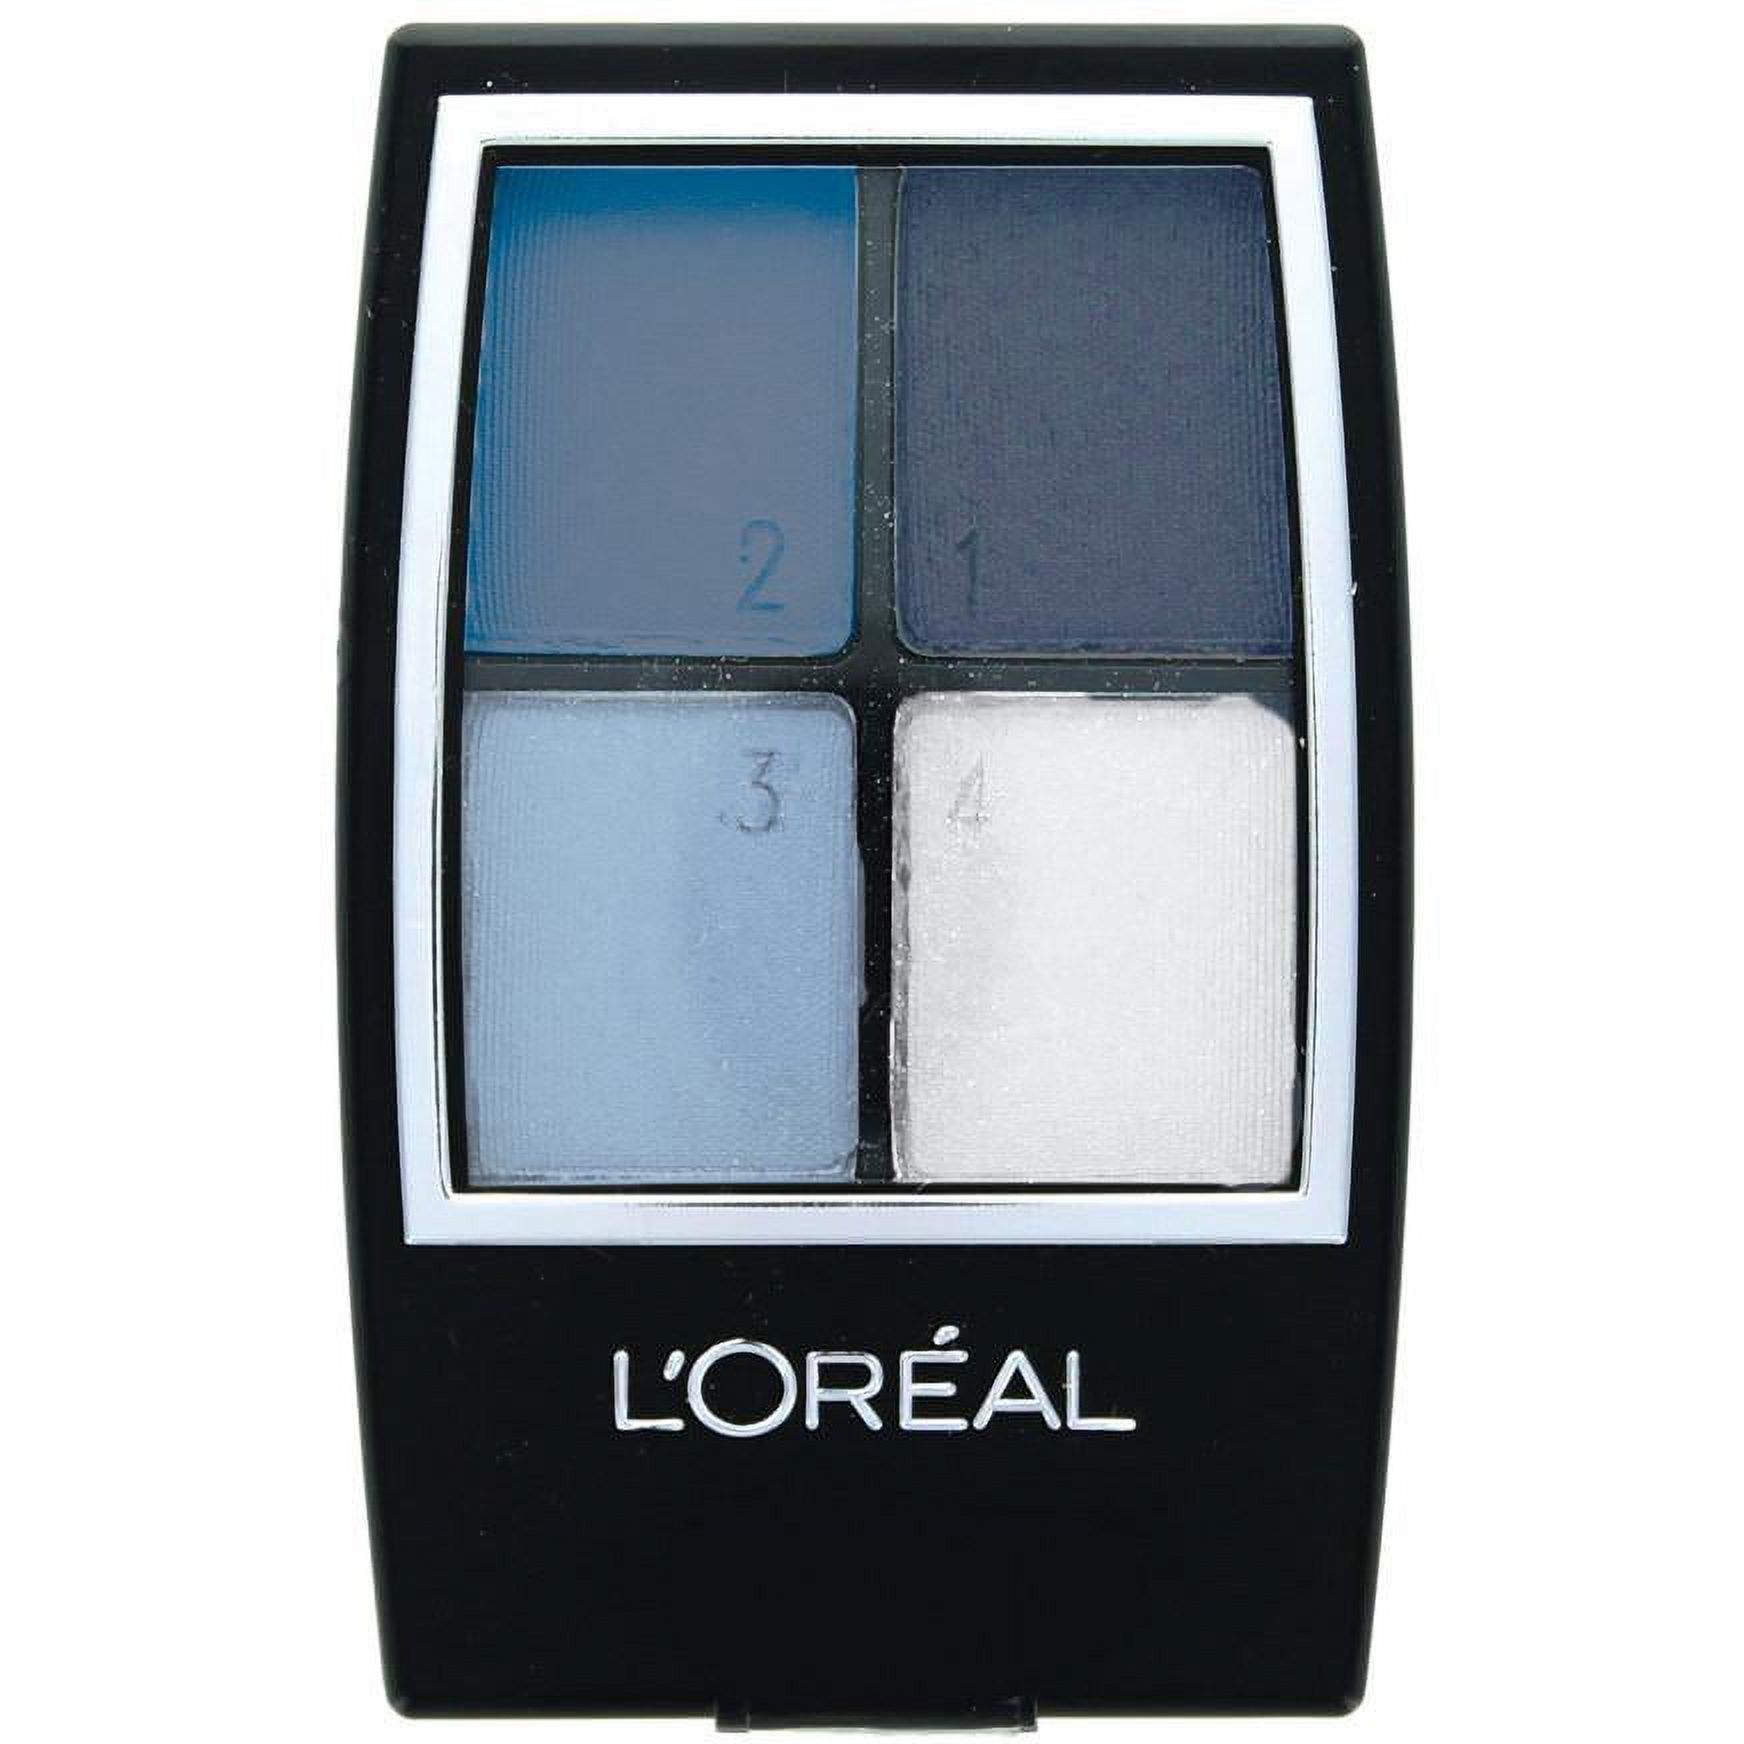 L'Oréal Paris Studio Secrets Professional Color Smokes Eyeshadow Quad, 936 Blackened Smokes, 0.16 Fl. Oz. - image 4 of 16